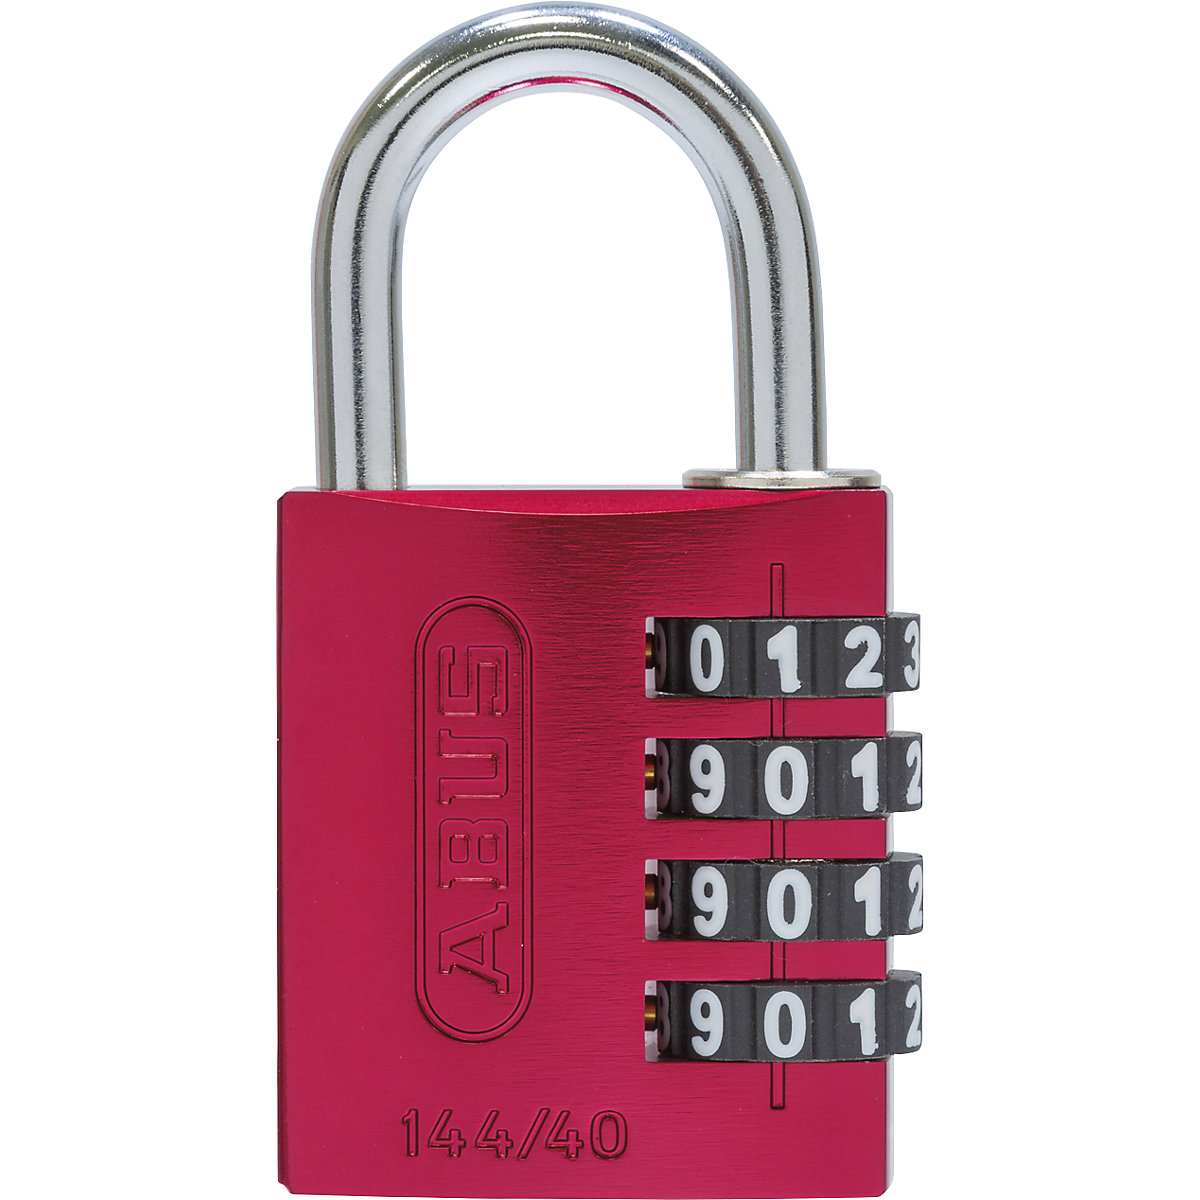 Brava s kombinacijom brojeva, aluminijska – ABUS, 144/40 Lock-Tag, pak. 6 kom., u crvenoj boji-2